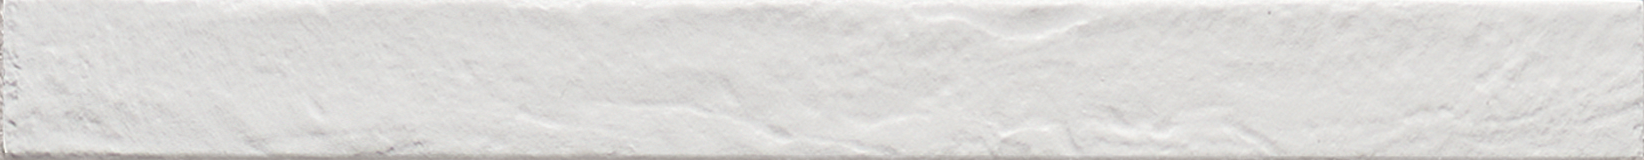 Westside 2x18 White Brick Matte Porcelain Tile - SAMPLES